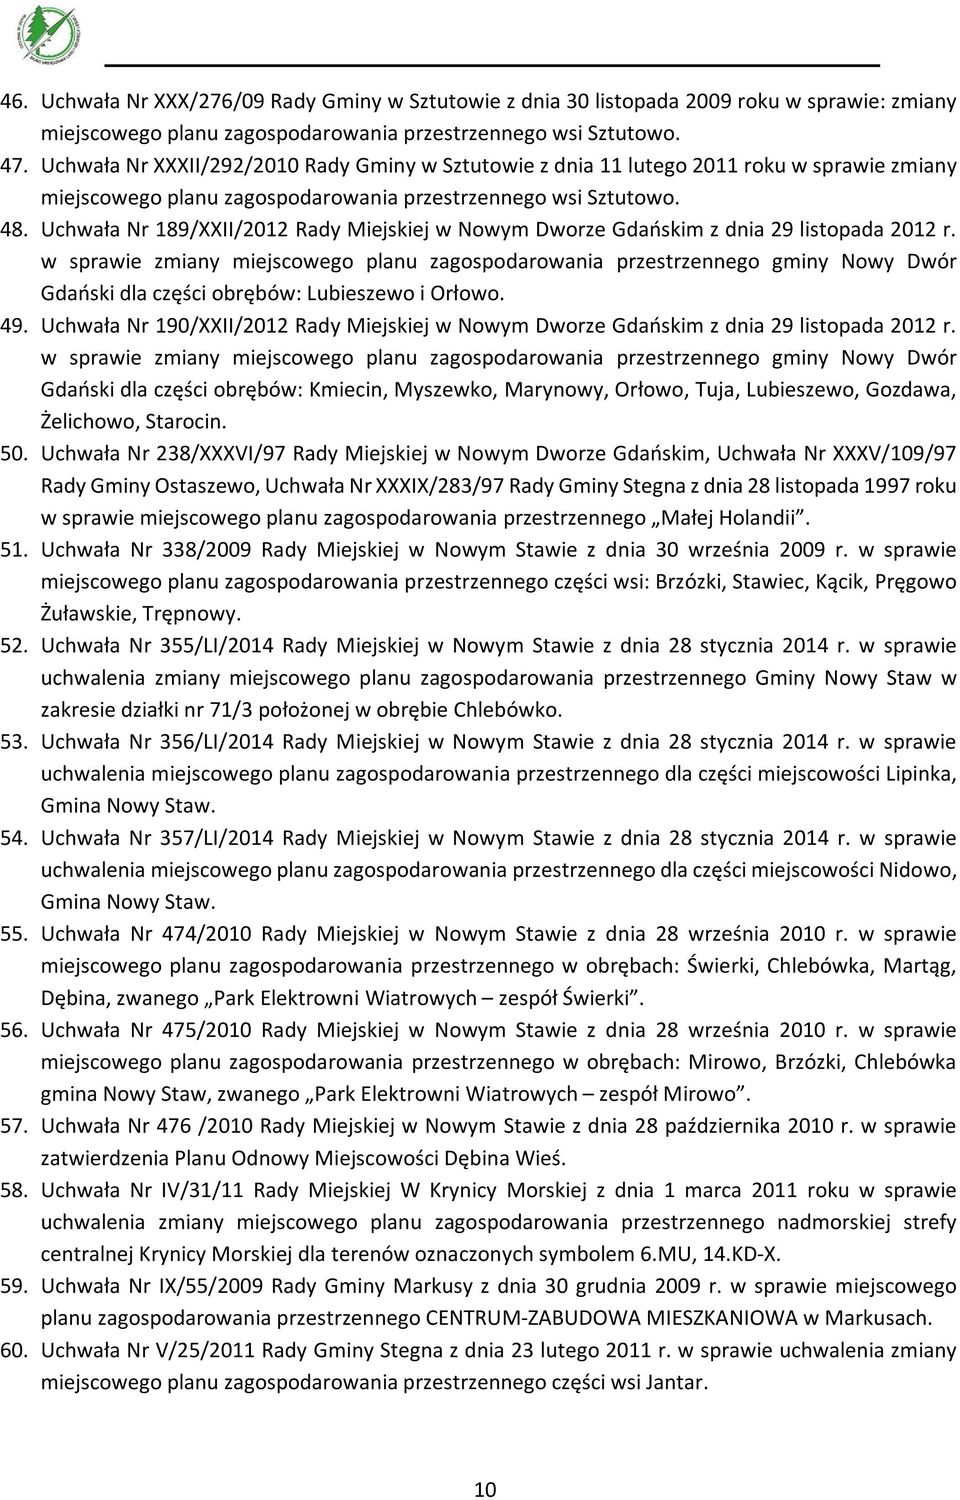 Uchwała Nr 189/XXII/2012 Rady Miejskiej w Nowym Dworze Gdańskim z dnia 29 listopada 2012 r.